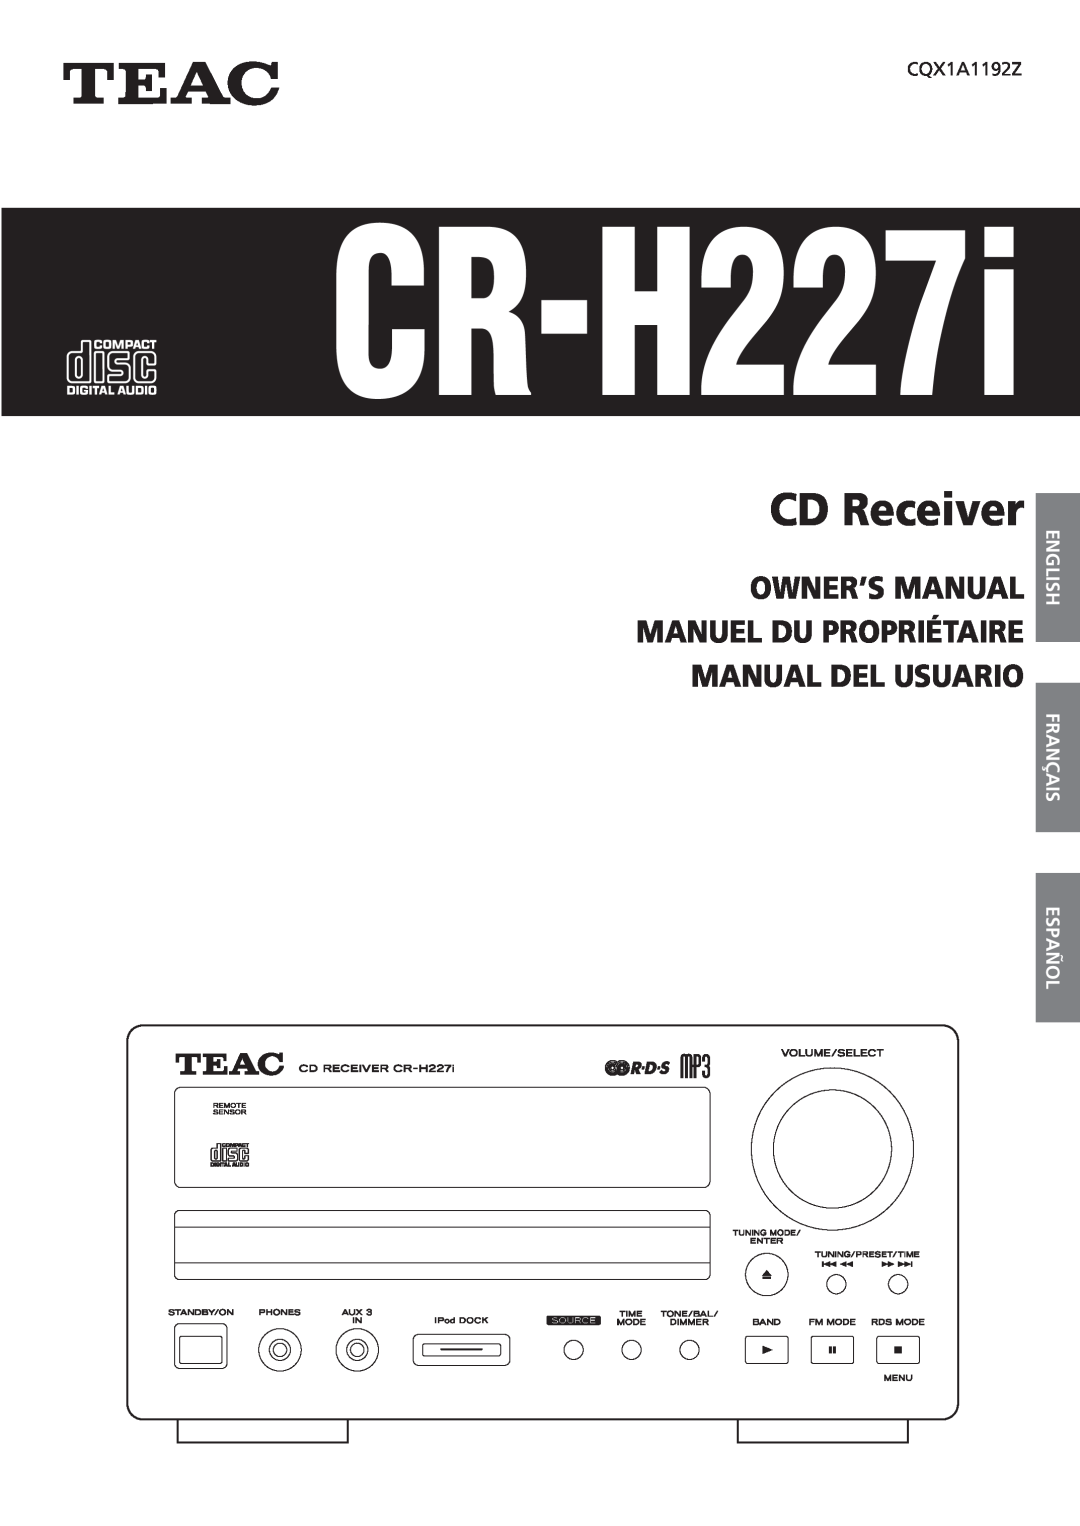 Teac CR-H227I owner manual English Français Español, CR-H227i, CD Receiver 